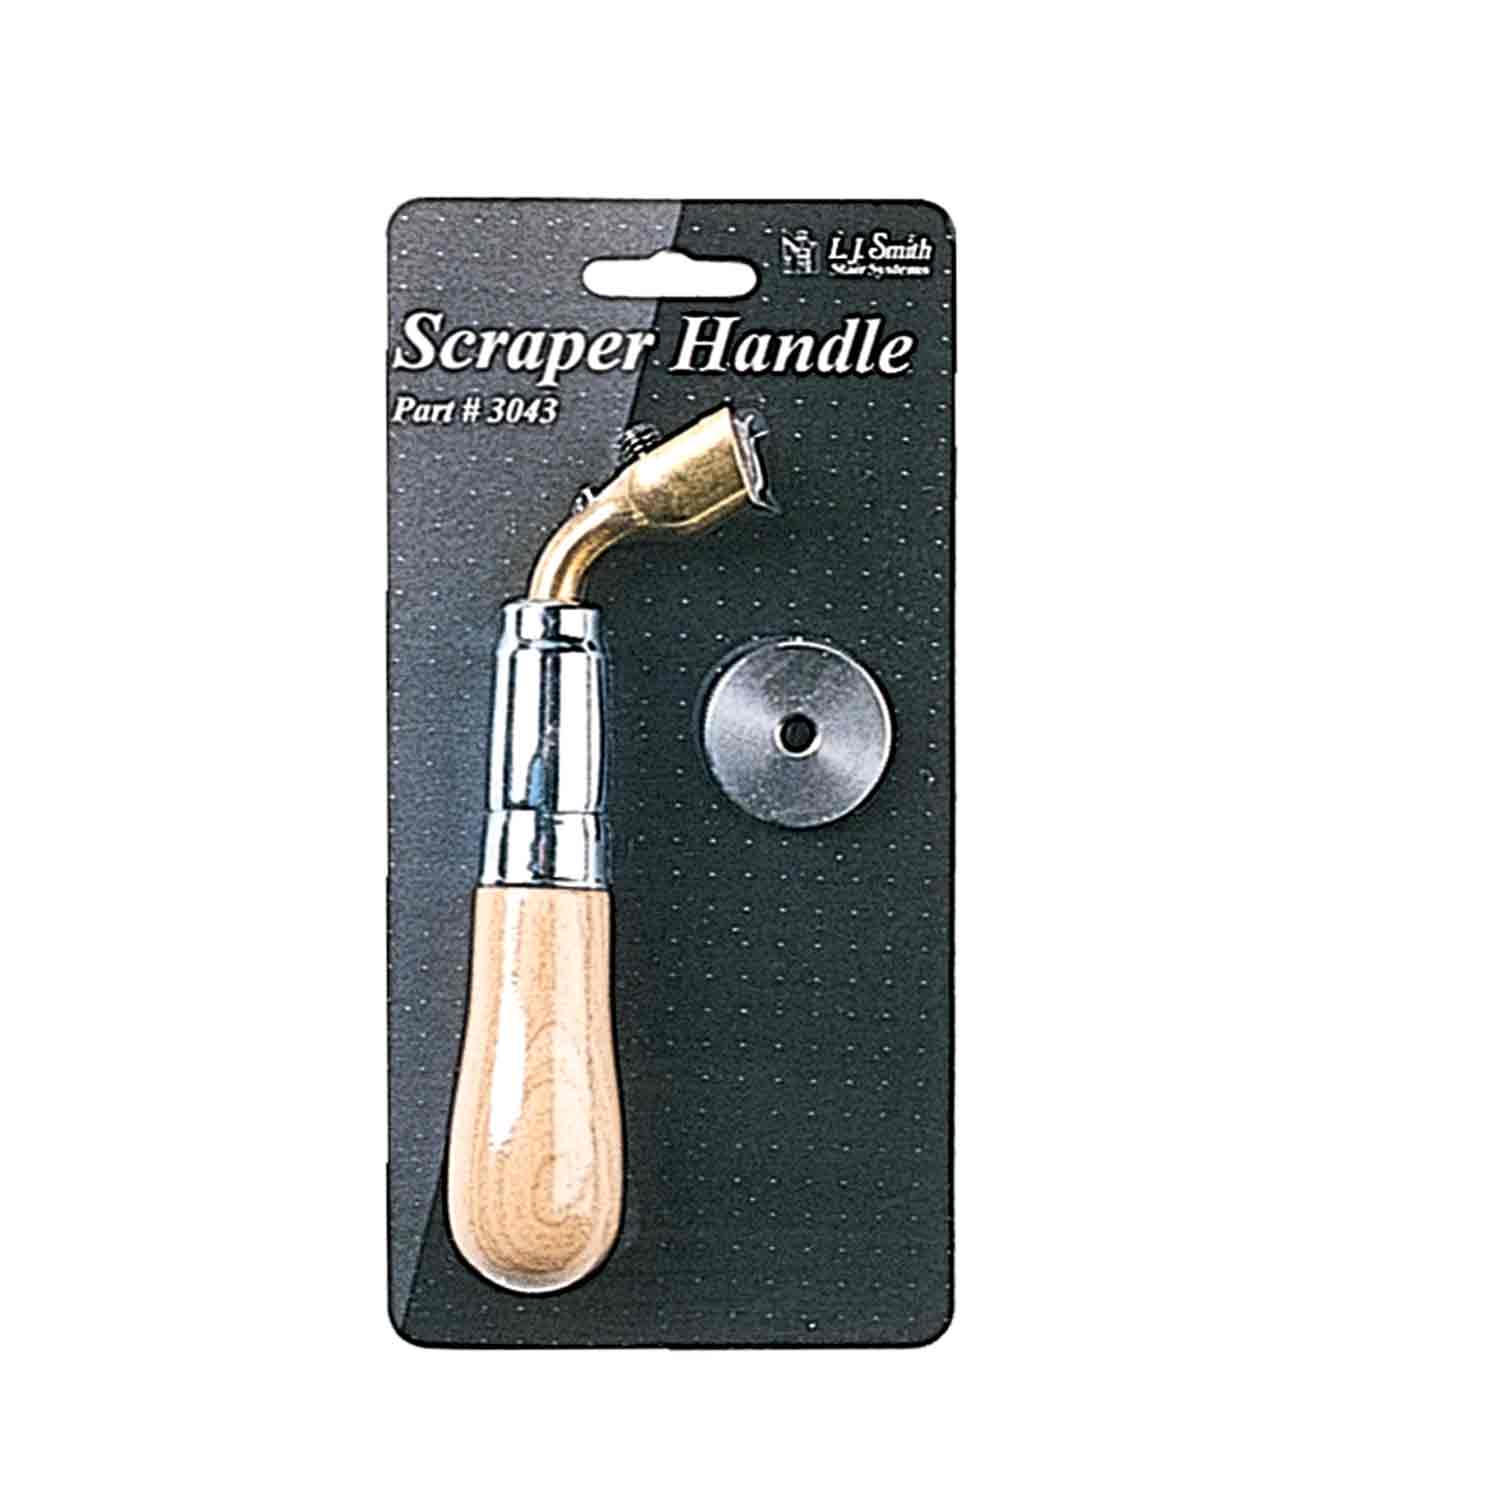 lj-3043 scraper handle